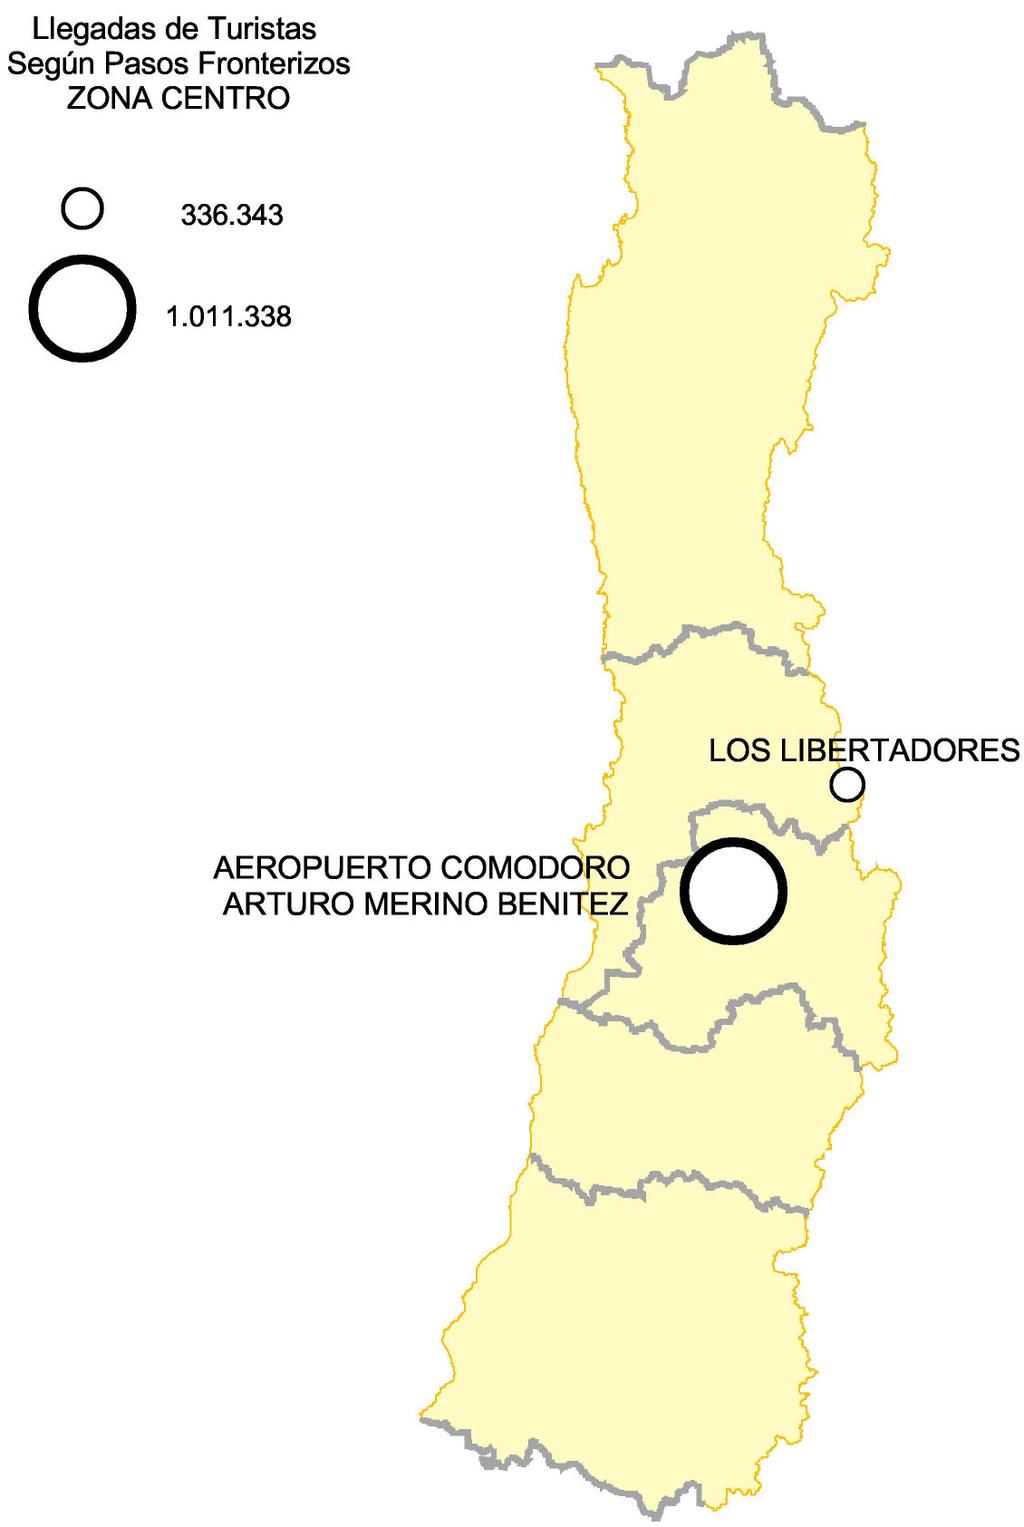 1.2 Zona Centro UBICACIÓN GEOGRÁFICA DE LAS PRINCIPALES PUERTAS DE ENTRADA DE LA ZONA CENTRO Por la Zona Central se registró un flujo de 1.371.